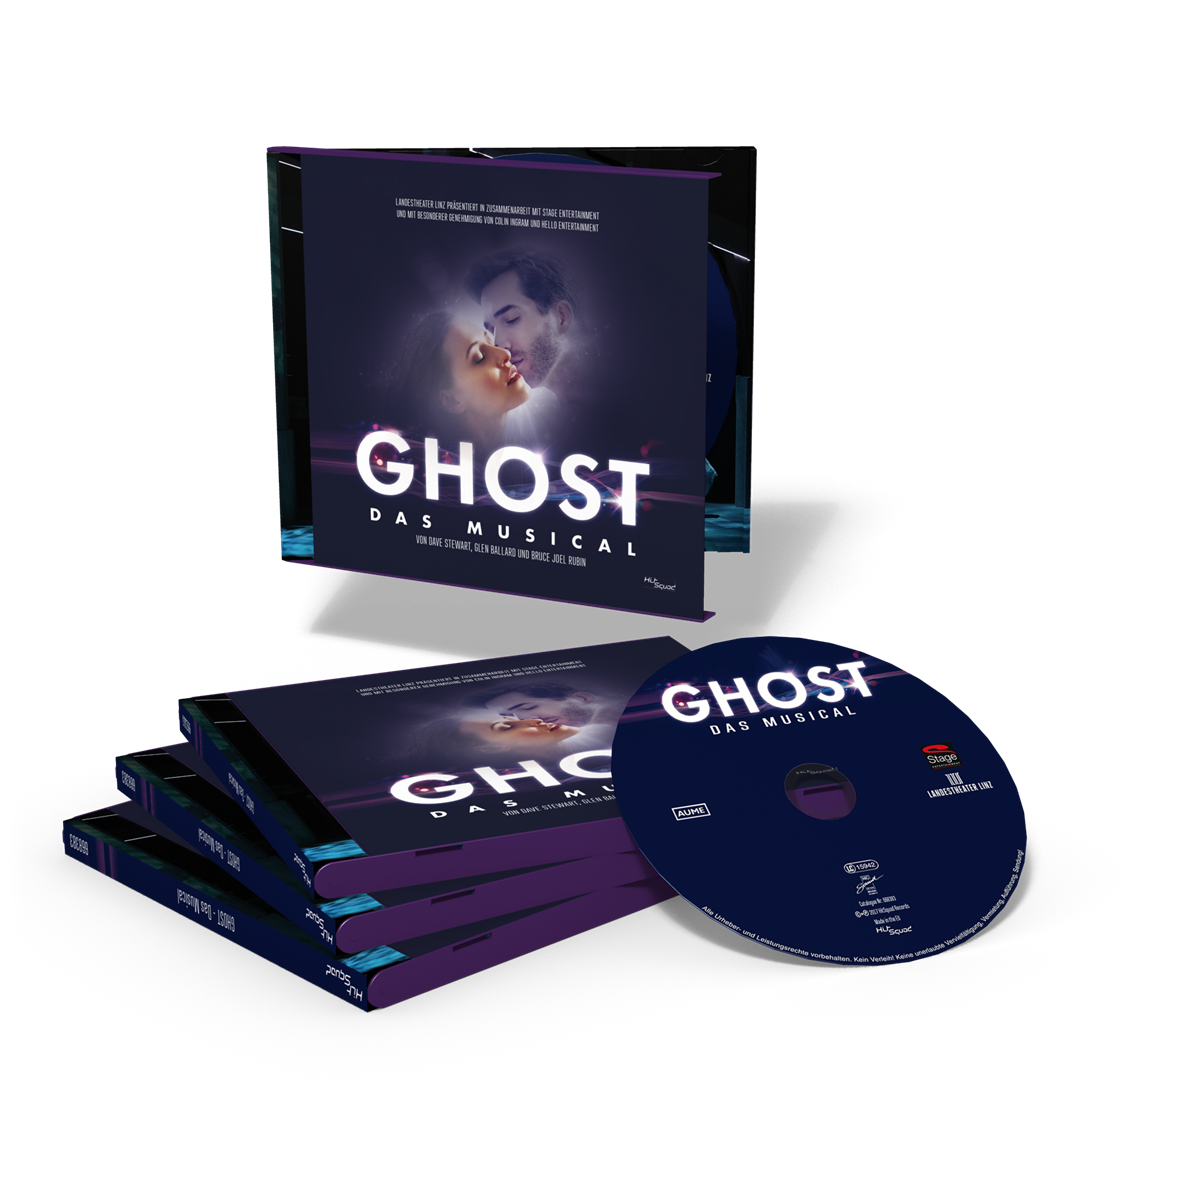 Ghost CD 3D